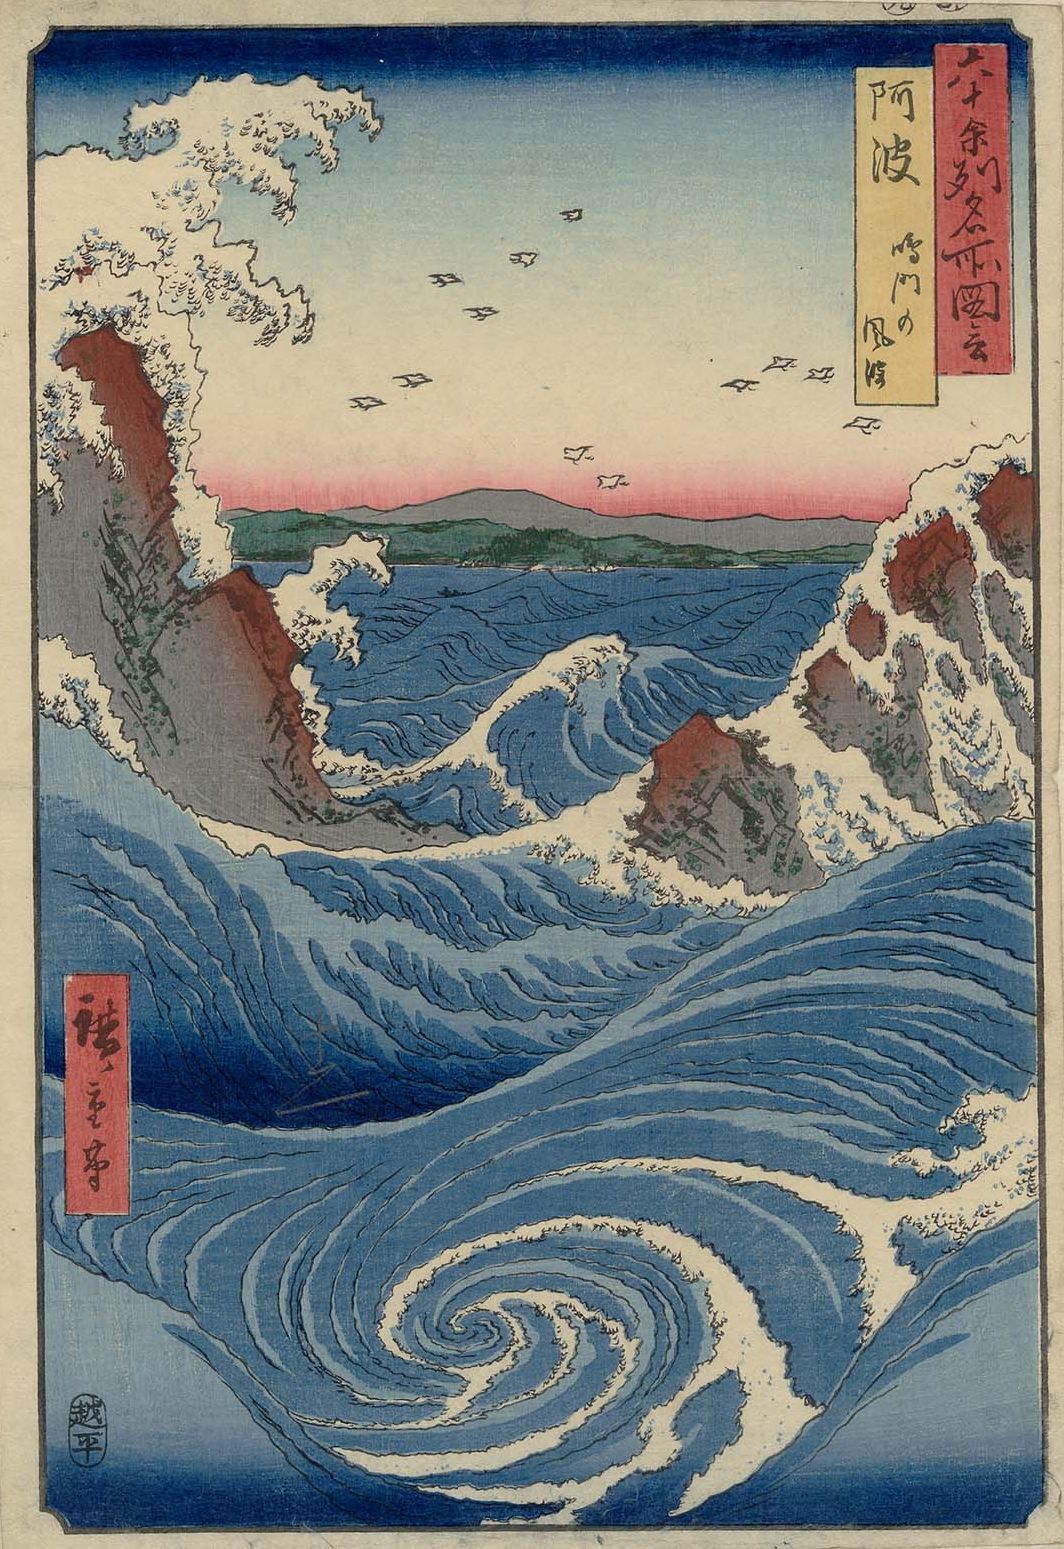 鳴門の風波 by  Hiroshige - 1856年 - 35.6 × 24.4 cm 